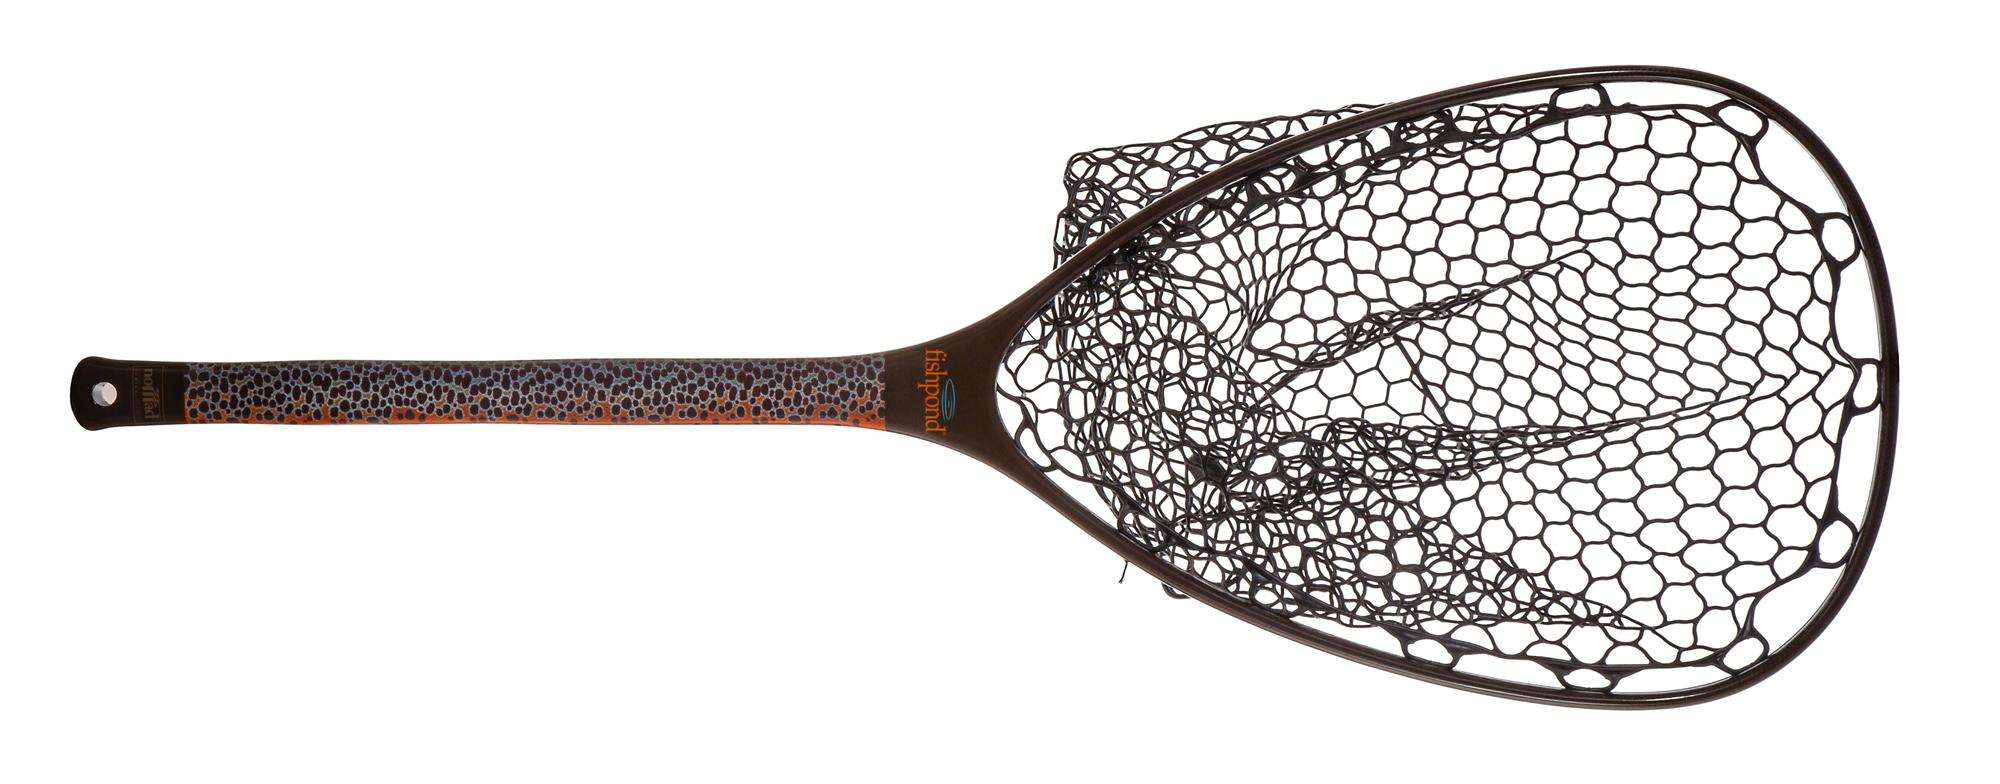 Fishpond Nomad Mid-Length Slab Net